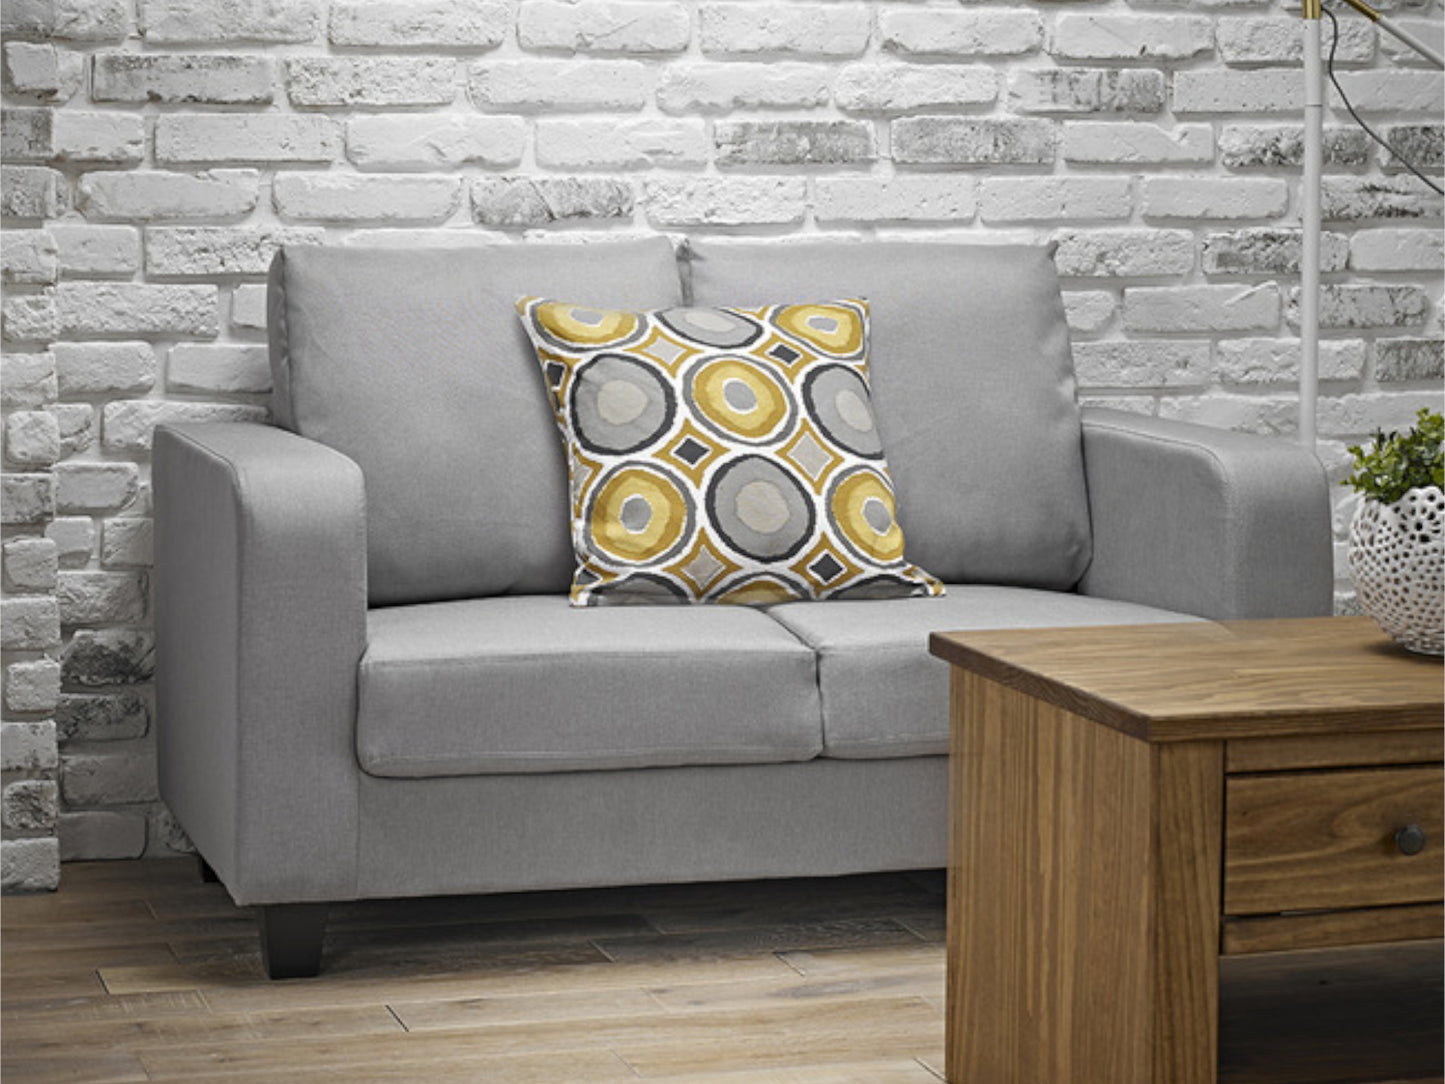 Sofa in a Box in Grey Fabric